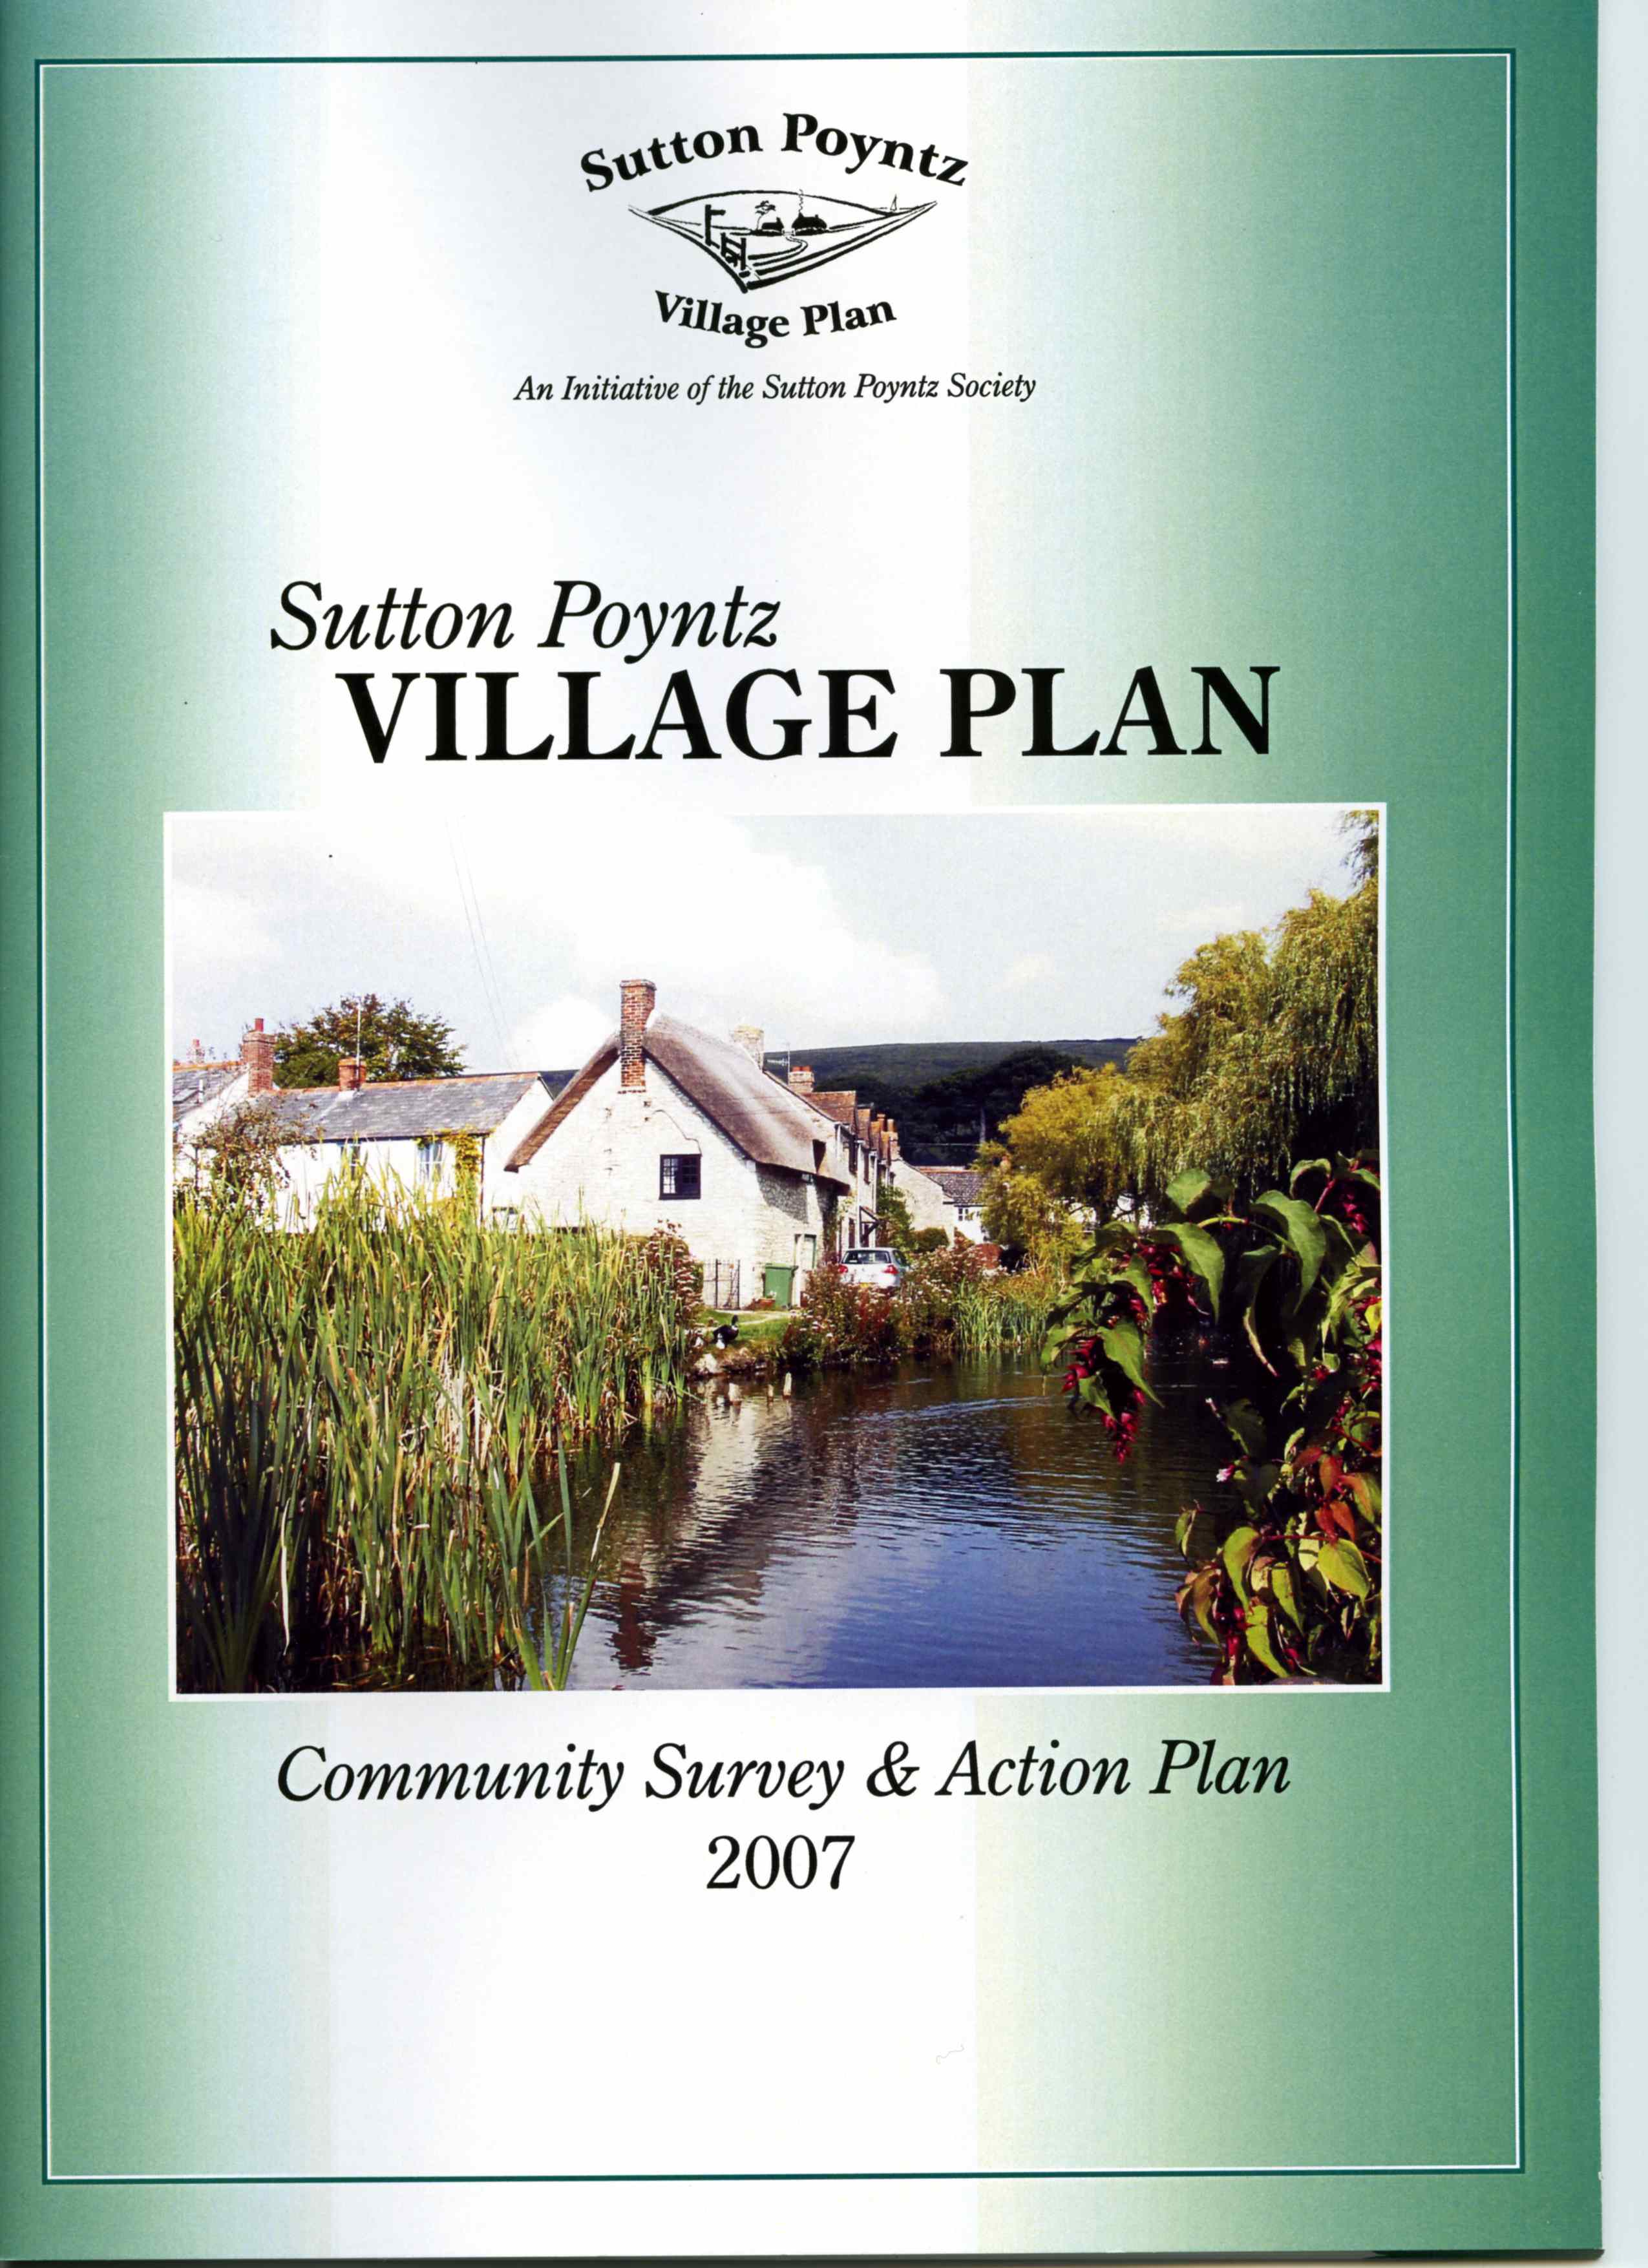 SP Village Plan cover 001